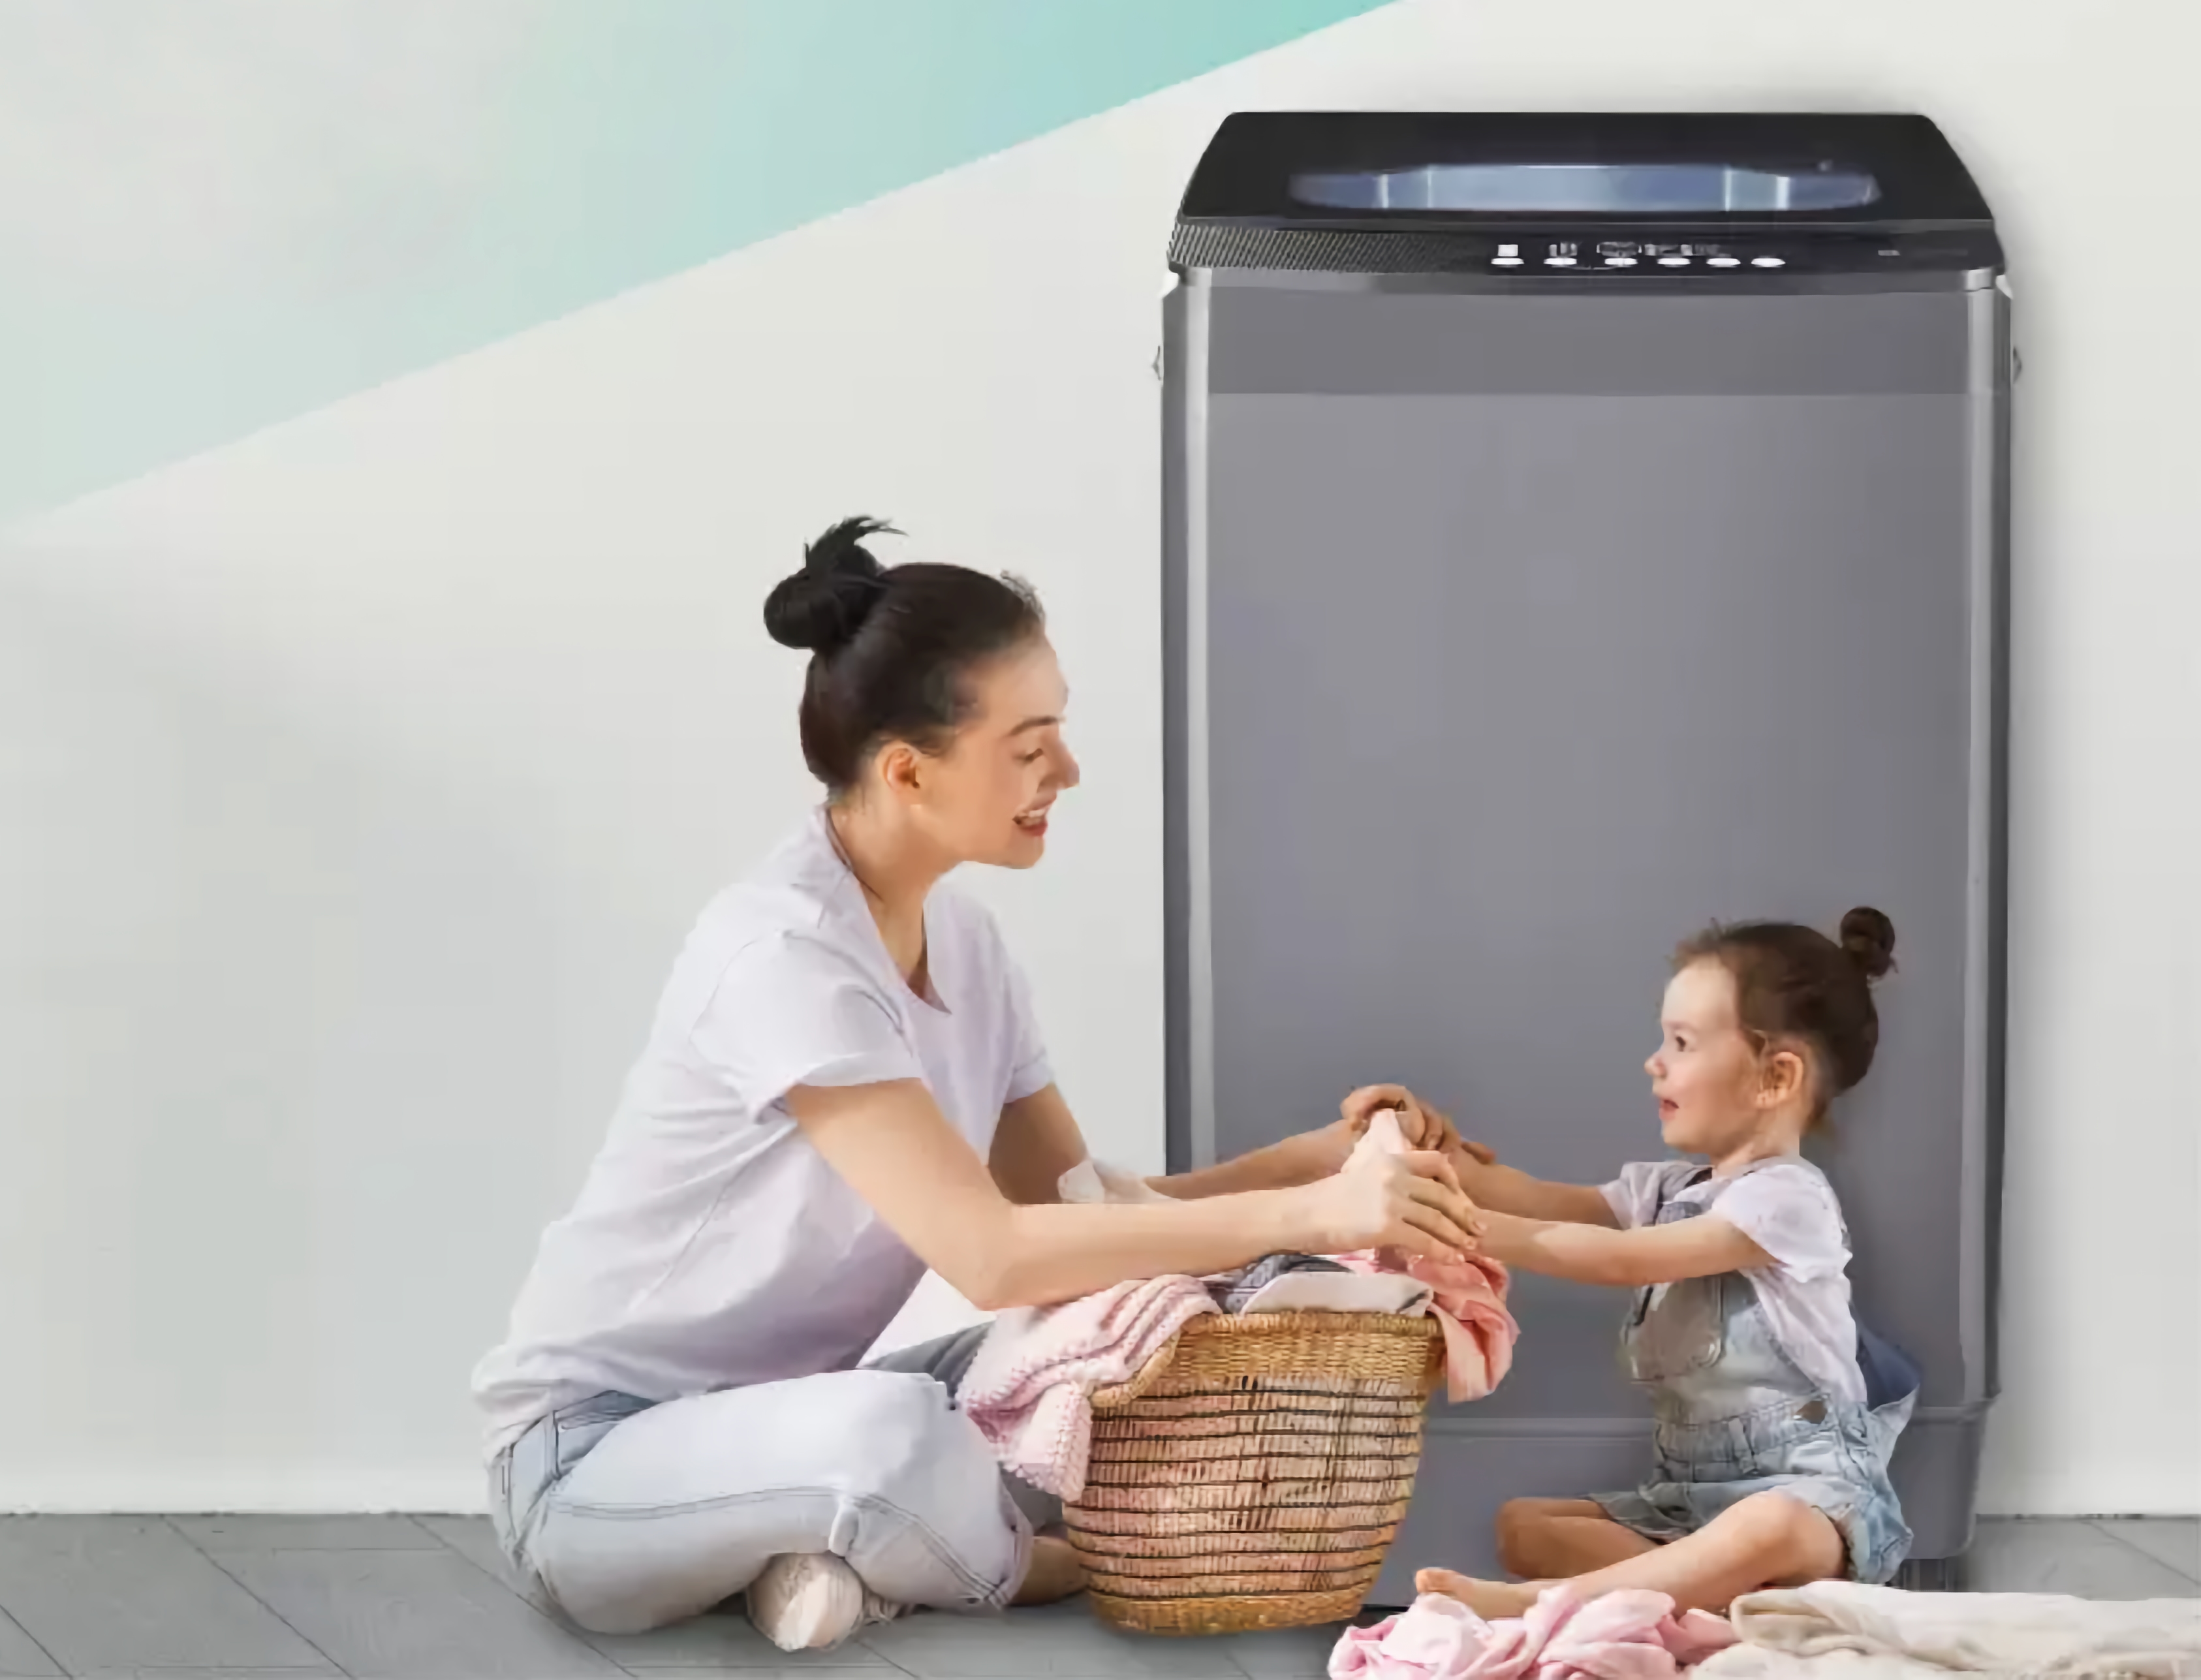 Nieoczekiwanie: Realme prezentuje swoją pierwszą pralkę stojącą o pojemności do 8 kg